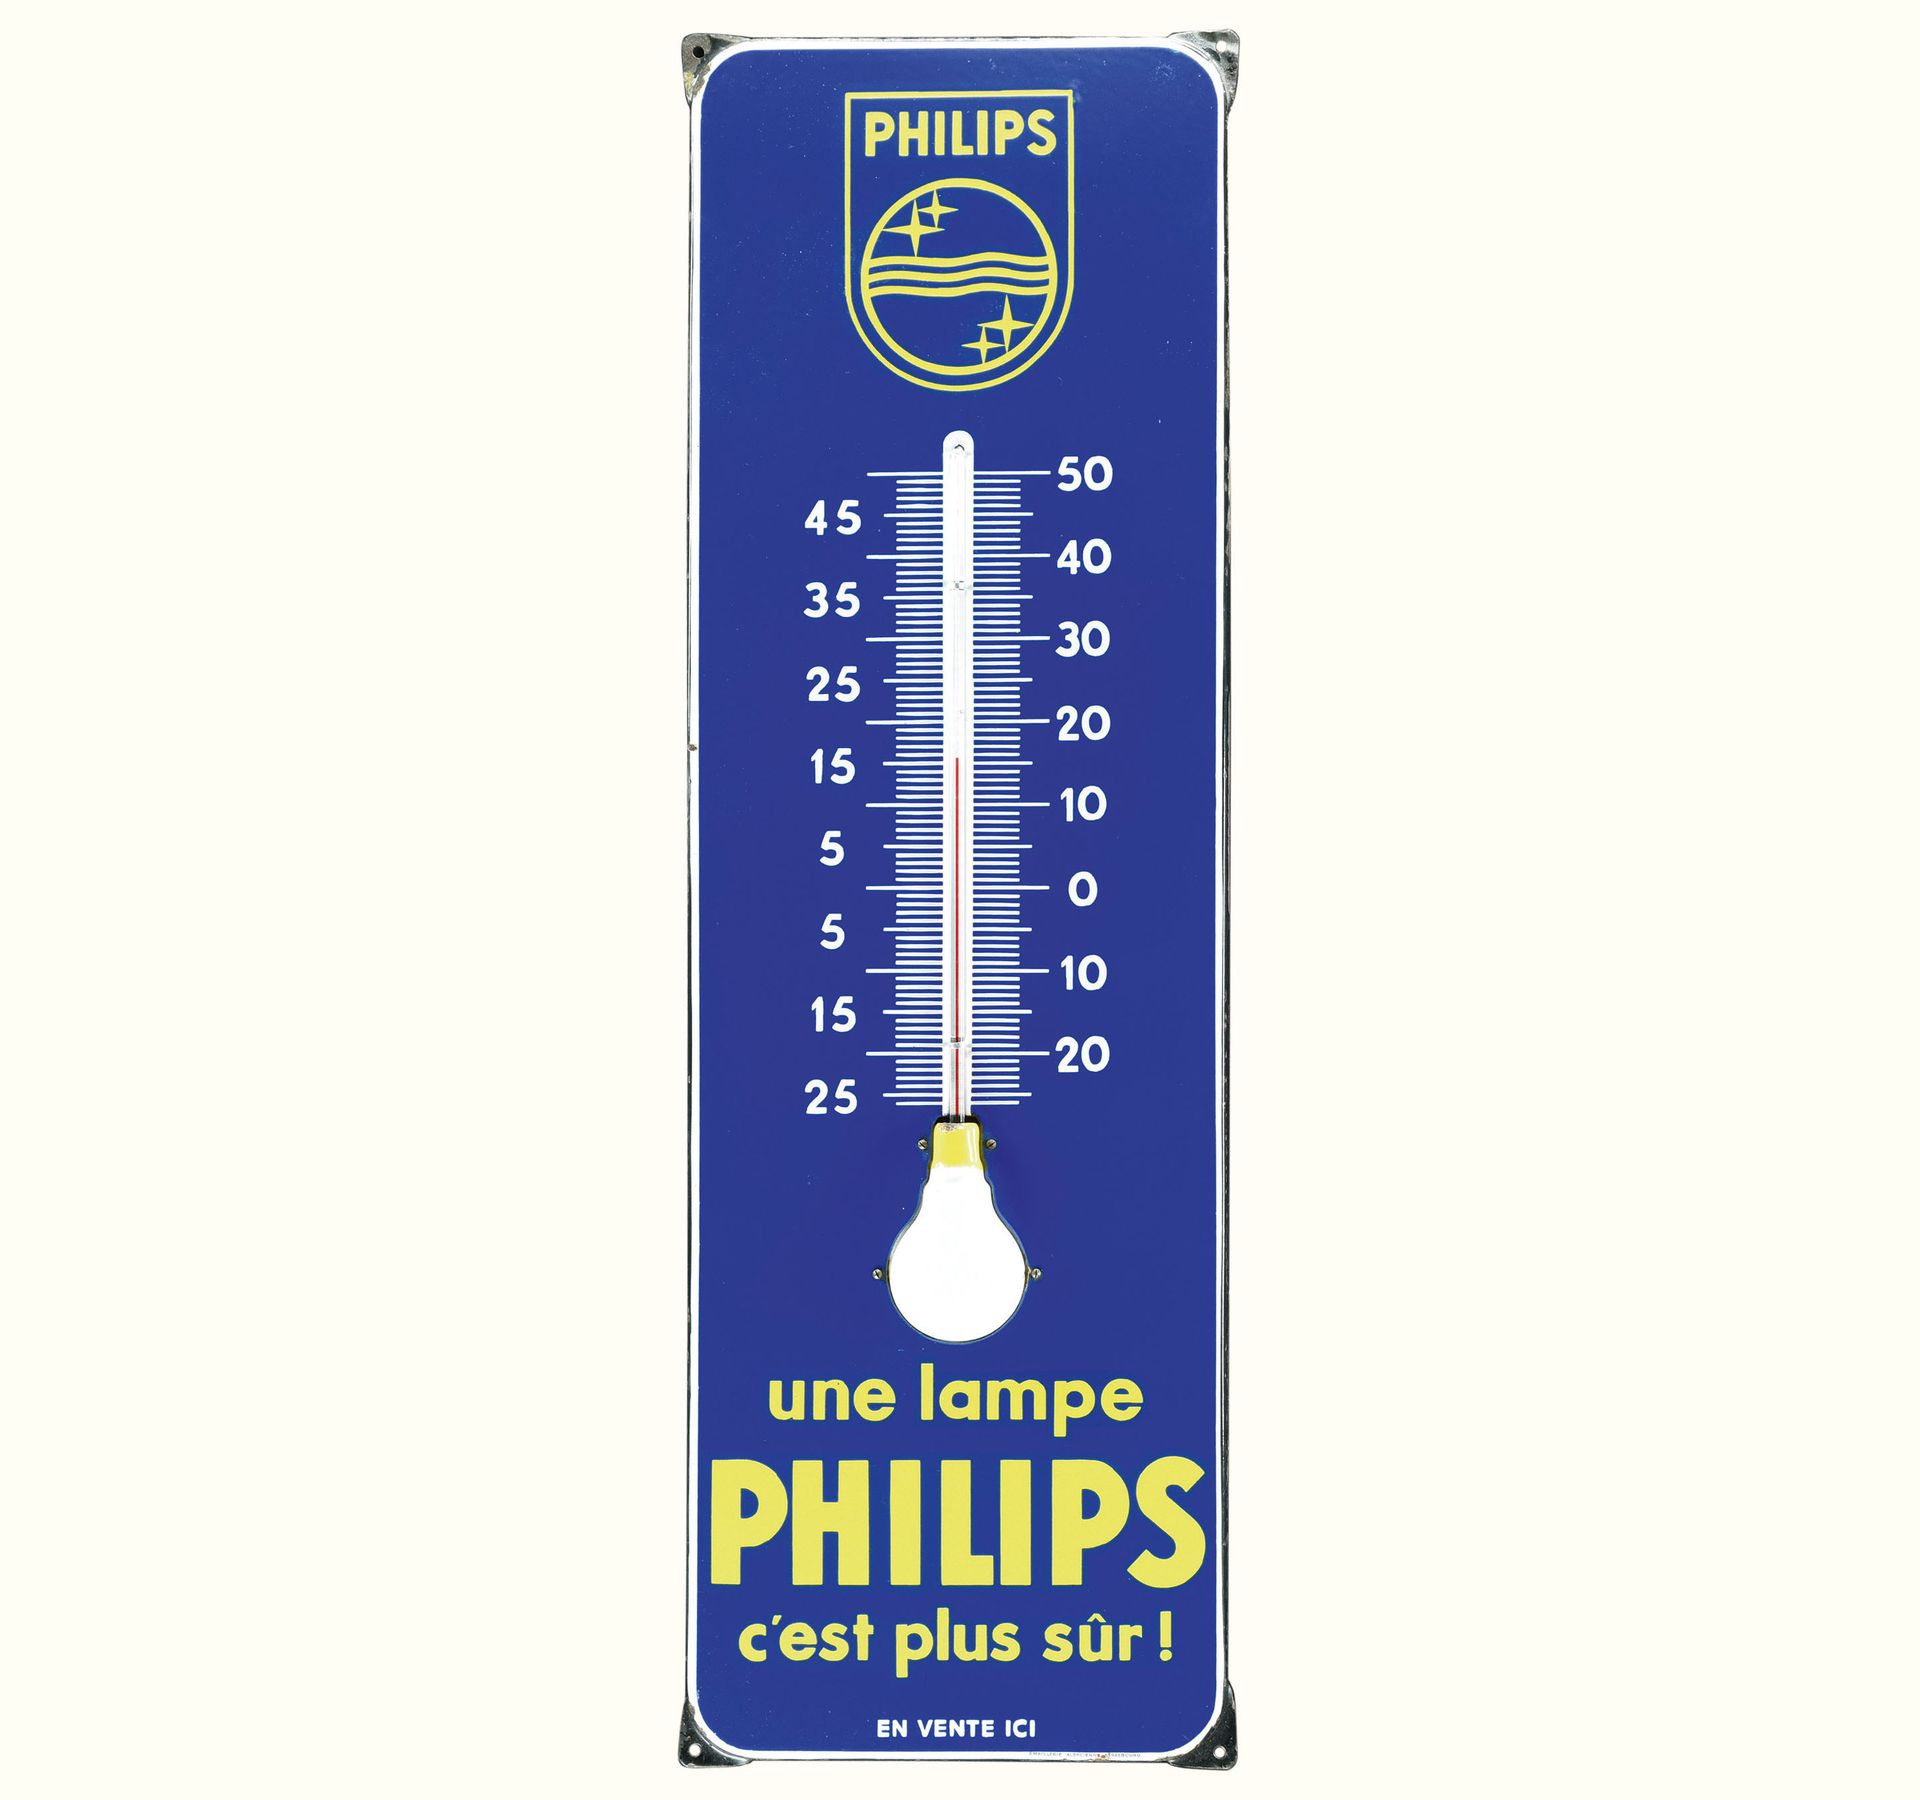 PHILIPS | PLAQUE EMAILLÉE | PUBLICITÉ ANCIENNE 状态 (1) - 搪瓷板，斜面，钢印，集成温度计（功能），50年代&hellip;